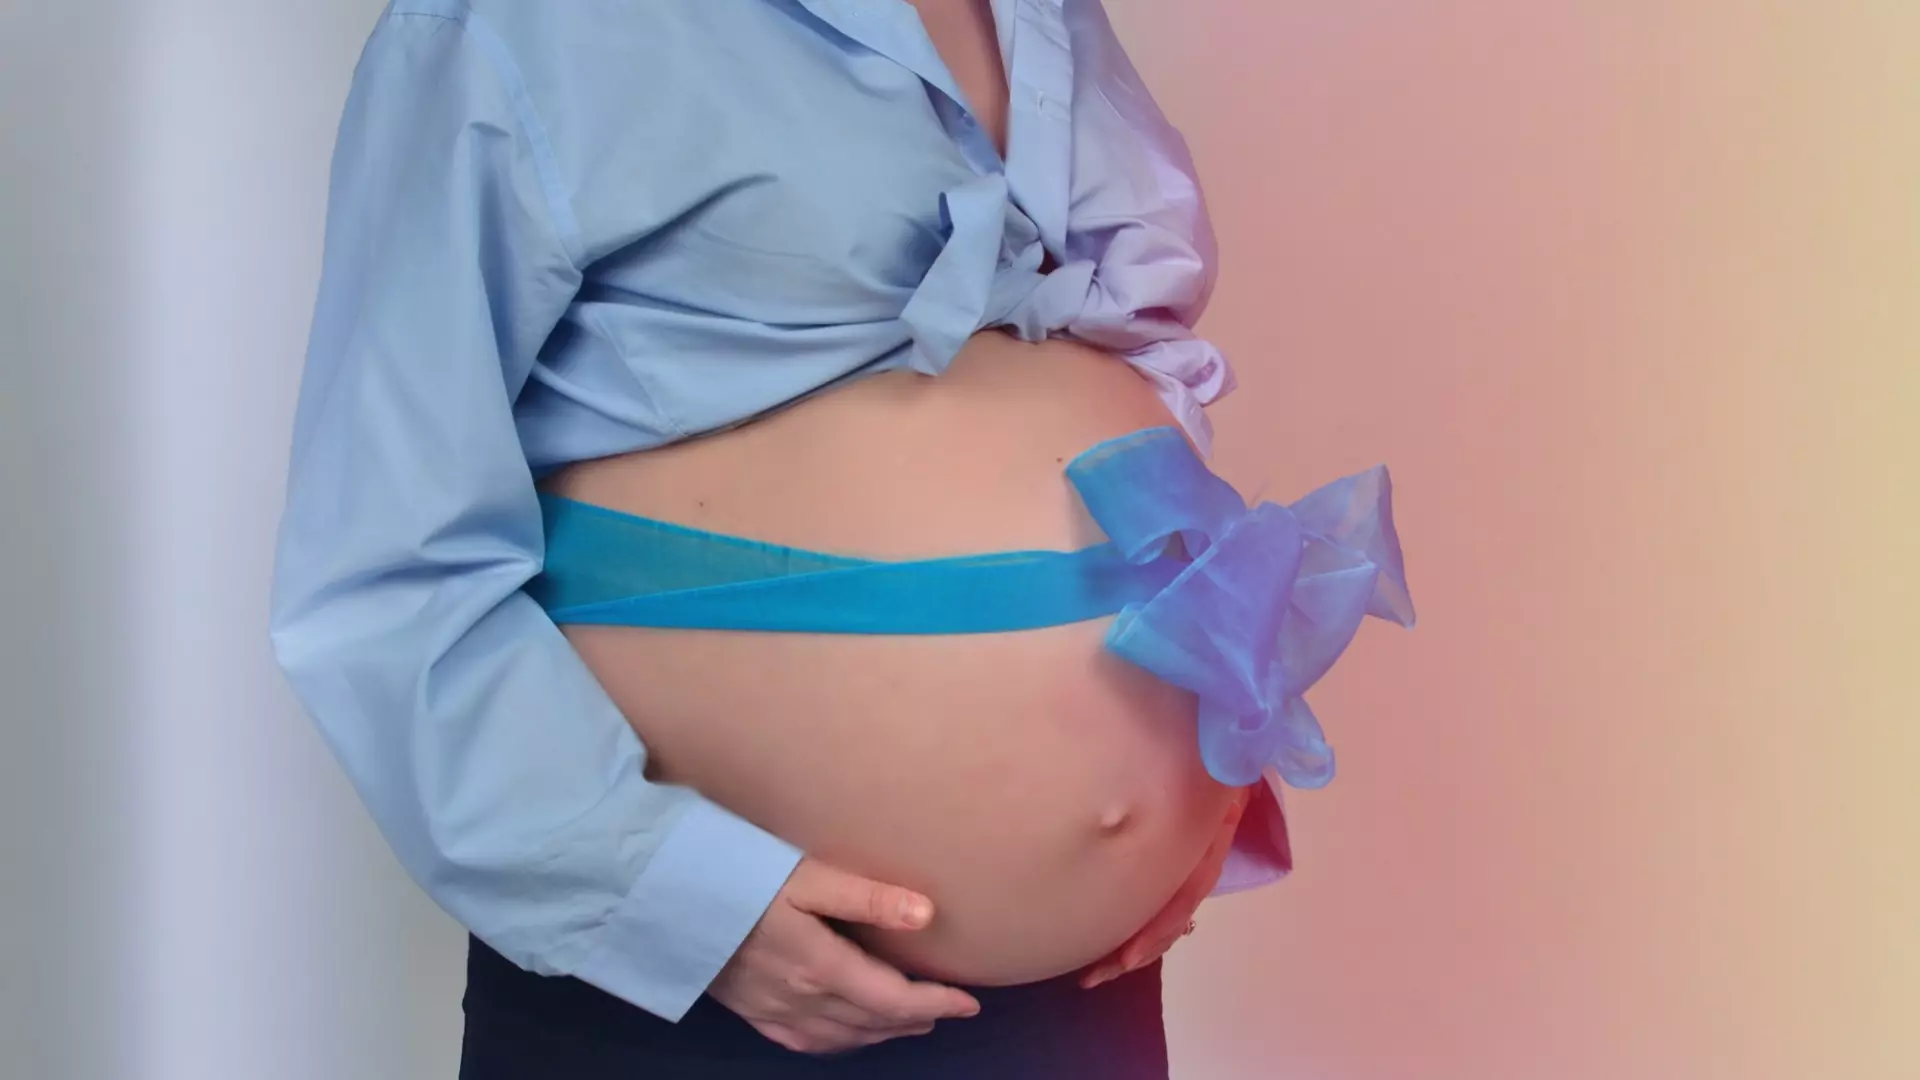 Размер пособия по беременности и родам для нижегородок увеличен в 1,5 раза